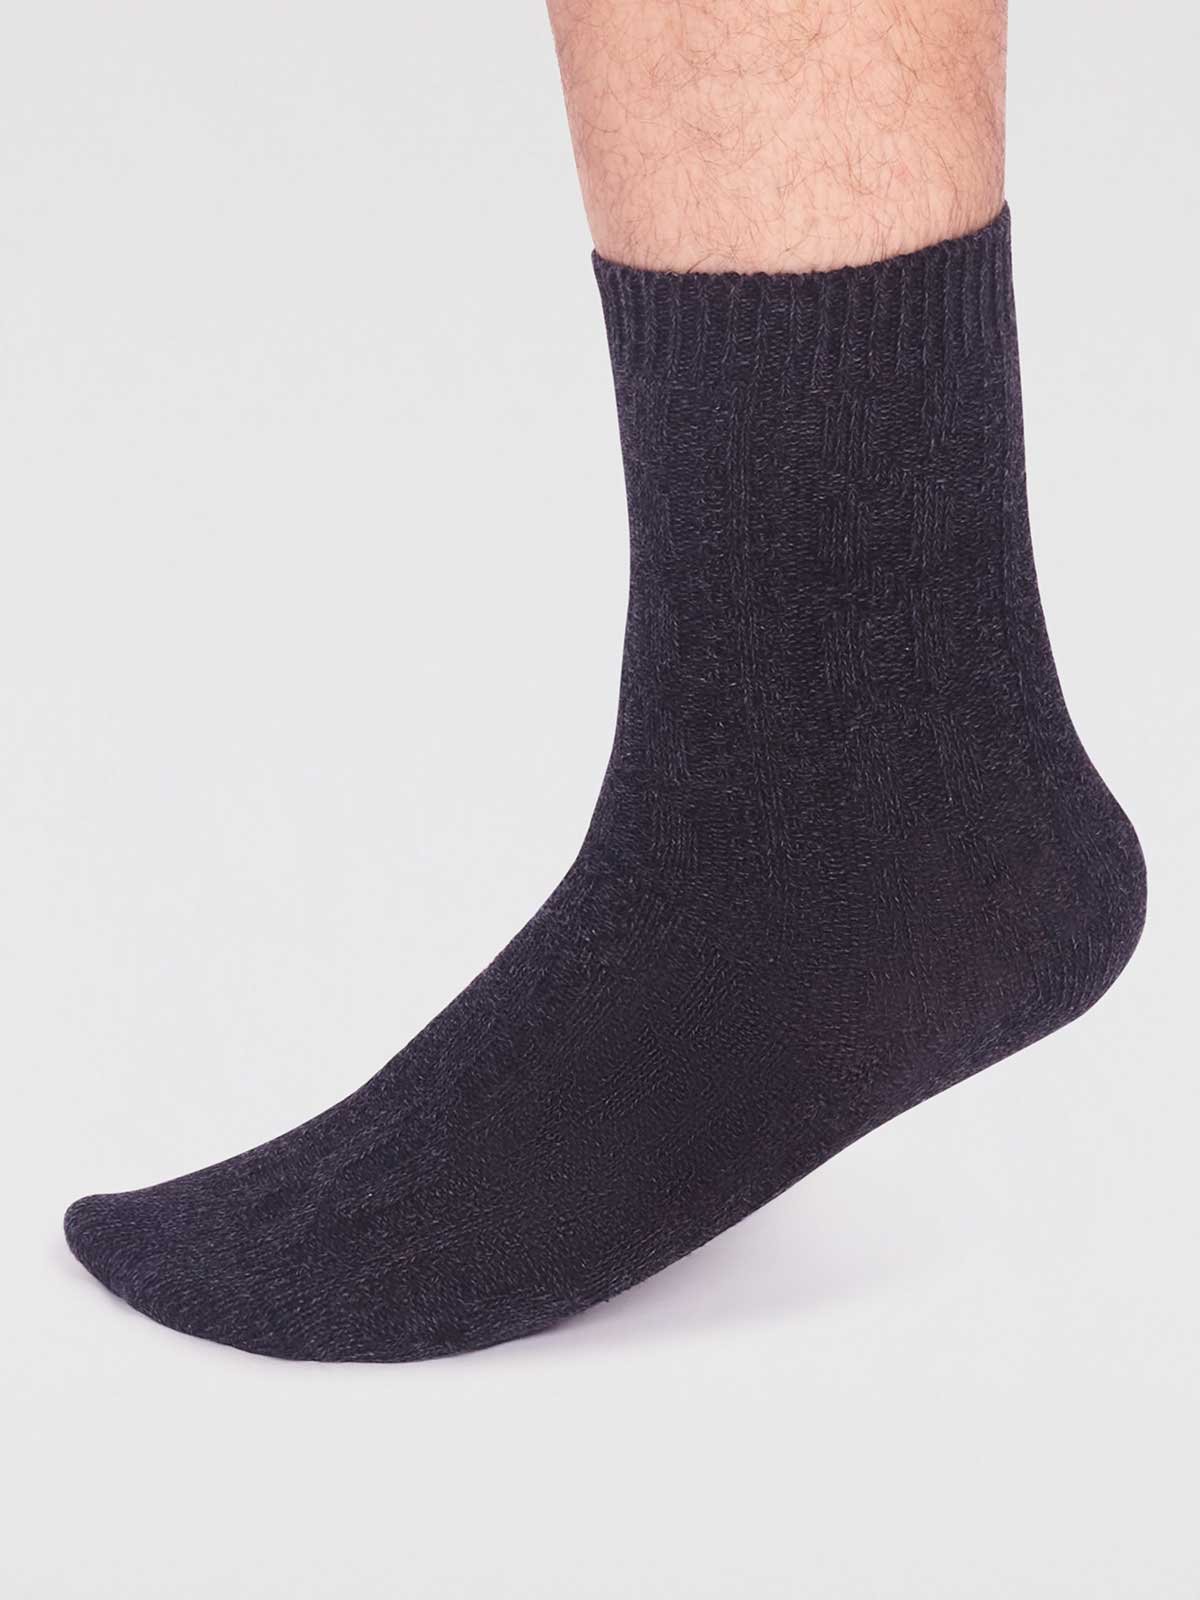 Hendrix Organic Cotton Rib Socks - Black